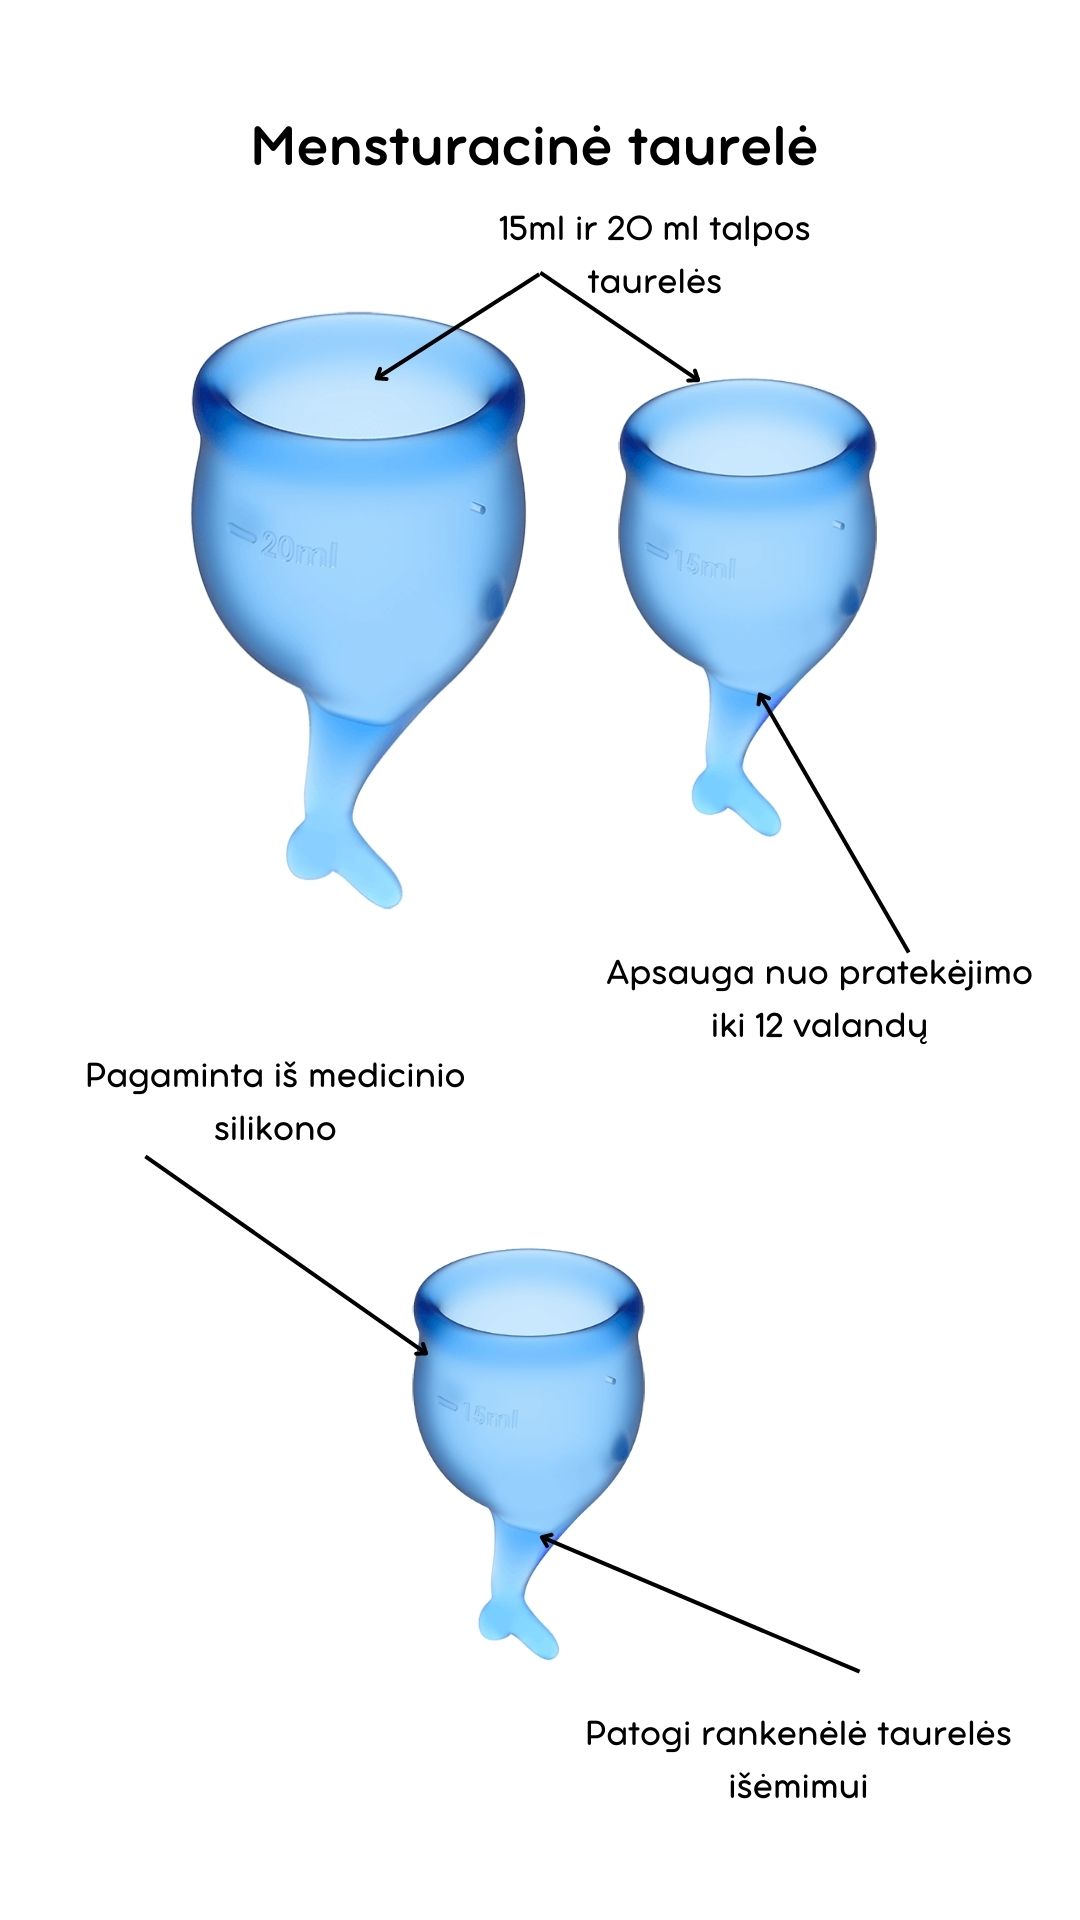 Menstruacinės taurelės Feel Secure - Dark blue 
Tamsiai mėlynos spalvos menstruacinės taurelės „Feel Secure“ iš „Satisfyer“ yra puiki, ekologiška ir ekonomiška alternatyva tamponams ar higieniniams įklotams. 
Rinkinyje yra dvi skirtingo tūrio, iš medicininio ir kūnui saugaus silikono pagamintos taurelės, kurias paprasta įsidėti. 
Šios higieniškos, medicininės silikoninės ir lengvai įdedamos menstruacinės taurelės, pasižyminčios žaismingu dizainu, susideda iš dviejų dalių. 15 ml  ir 20 ml talpos, todėl tinka lengvesnėms ir sunkesnėms dienoms. 
Žuvelės formos uodegėlė skirta tam, kad taurelę būtų patogu ištraukti. 
Menstruacijų pradžioje galite rinktis 20 ml talpos taurelę, o pabaigoje – 15 ml. 
  
Kodėl rinktis menstruacinę taurelę? 
Jokio nemalonaus kvapo ir baimės, kad neturite susavimi įklotų! Su menstruacine taurele galite laisvai sportuoti, maudytis, miegoti ar bėgioti. 
Tai yra ekologiška alternatyva, kuri padeda saugoti planetą. 
Sutaupysite! Menstruacinė taurelė gali tarnauti kelis metus, todėl tai yra ekonomiška alternatyva su kuria sutaupysite iki 90% išlaidų, kurias skiriate įklotams ir tamponams. 
Jokio pratekėjimo iki 12 valandų! Menstruacinę taurelę galite įsidėti ryte, o išsiimti ir ištuštinti tik vakare.  
Kas gali naudoti menstruacinę taurelę? 
Daugiau ir mažiau kraujuojančios.  
Gimdžiusios ir negimdžiusios moterys.  
Moterys, neturėjusios lytinių santykių.  
Ar taurelė nepratekės? 
Tam, kad menstruacinė taurelė nepratekėtų, ji turi tinkamai išsiskleisti viduje. Tam, kad įsitikintumėte, jog taurelė tinkamai atsidarė, galite su pirštu perbraukti per kraštelį ir patikrinti, ar nesusiformavo raukšlės. Jei taurelė teisingai atsidarė, bus susidaręs vakuumas.  
Taurelė gali pratekėti, jei mėnesinės yra itin gausios, kad to nenutiktų – turite stebėti mėnesinių gausą ir rekomenduojama dažniau ištuštinti taurelę, kol suprasite kas kiek valandų jums reikia ją tuštinti ir atrasite tavo ritmą.  
Kaip ištuštinti taurelę? 
Taurelę rekomenduojama ištuštinti kas 12 valandų ar dažniau, jei kraujuojate gausiau. Ištuštinus taurelę ją nuplaukite po tekančiu vandeniu ir dezinfekuokite.  
Kaip įsidėti menstruacinę taurelę? 
Prieš naudojant menstruacinę taurelę, ją reikia pavirti 3-5 minutes vandenyje.  
Nusiplaukite rankas ir atsisėdusi ant unitazo praskėskite kojas. 
Spustelkite rodomuoju pirštu per vienos taurelės briaunos vidurį (taurelė bus U formos).  
Lengvai stumiant, įdėkite taurelę į makštį. 
Kaip išimti menstruacinę taurelę? 
Taurelę išsitraukti galite timptelėjusios už jos uodegėlės, o kraują išpilkite į unitazą. Taurelę praplaukite ir galite ją naudoti vėl. Pasibaigus mėnesinėms, taurelę pavirkite vandenyje.  
Šlapinantis ar tuštinantis taurelės išsiimti nereikia.